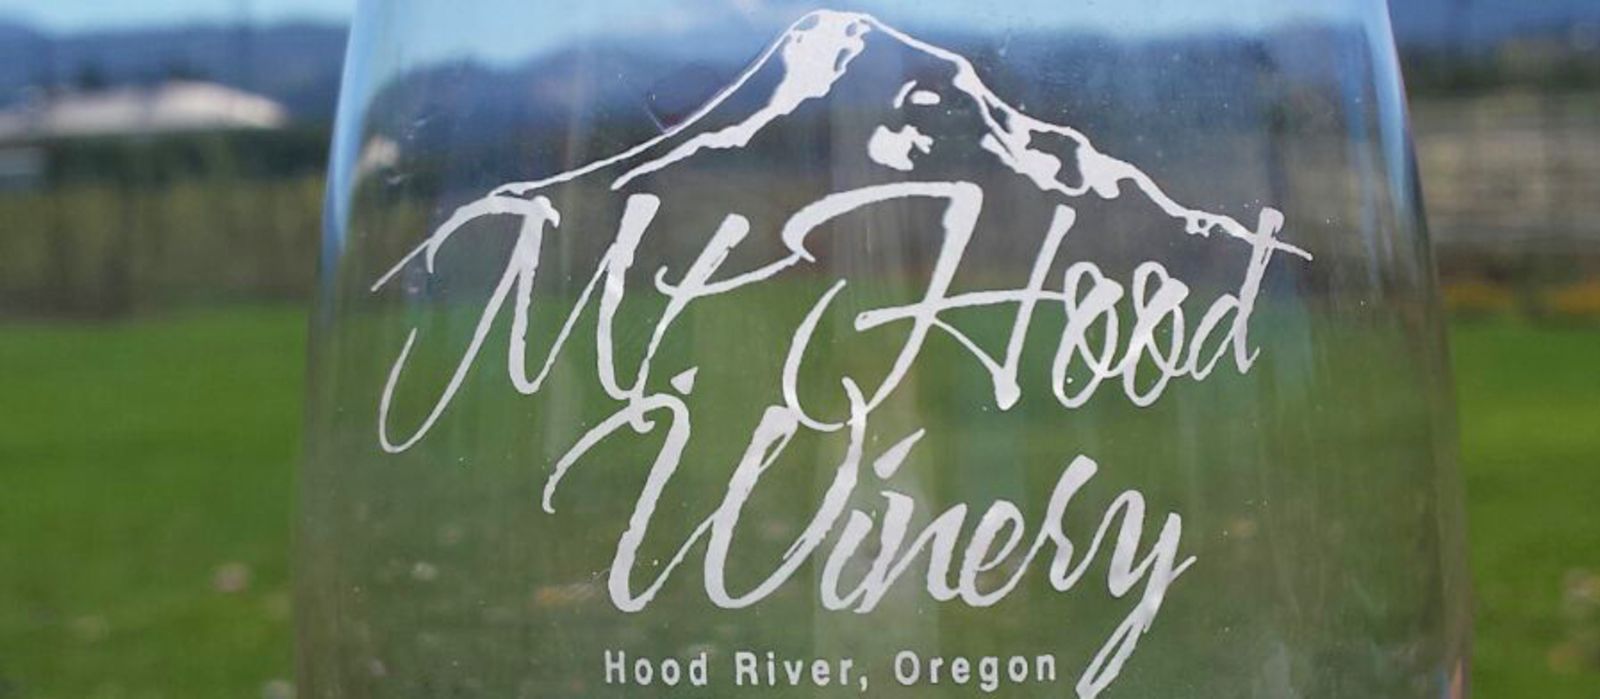 Mount Hood Winery, Hood River, Oregon